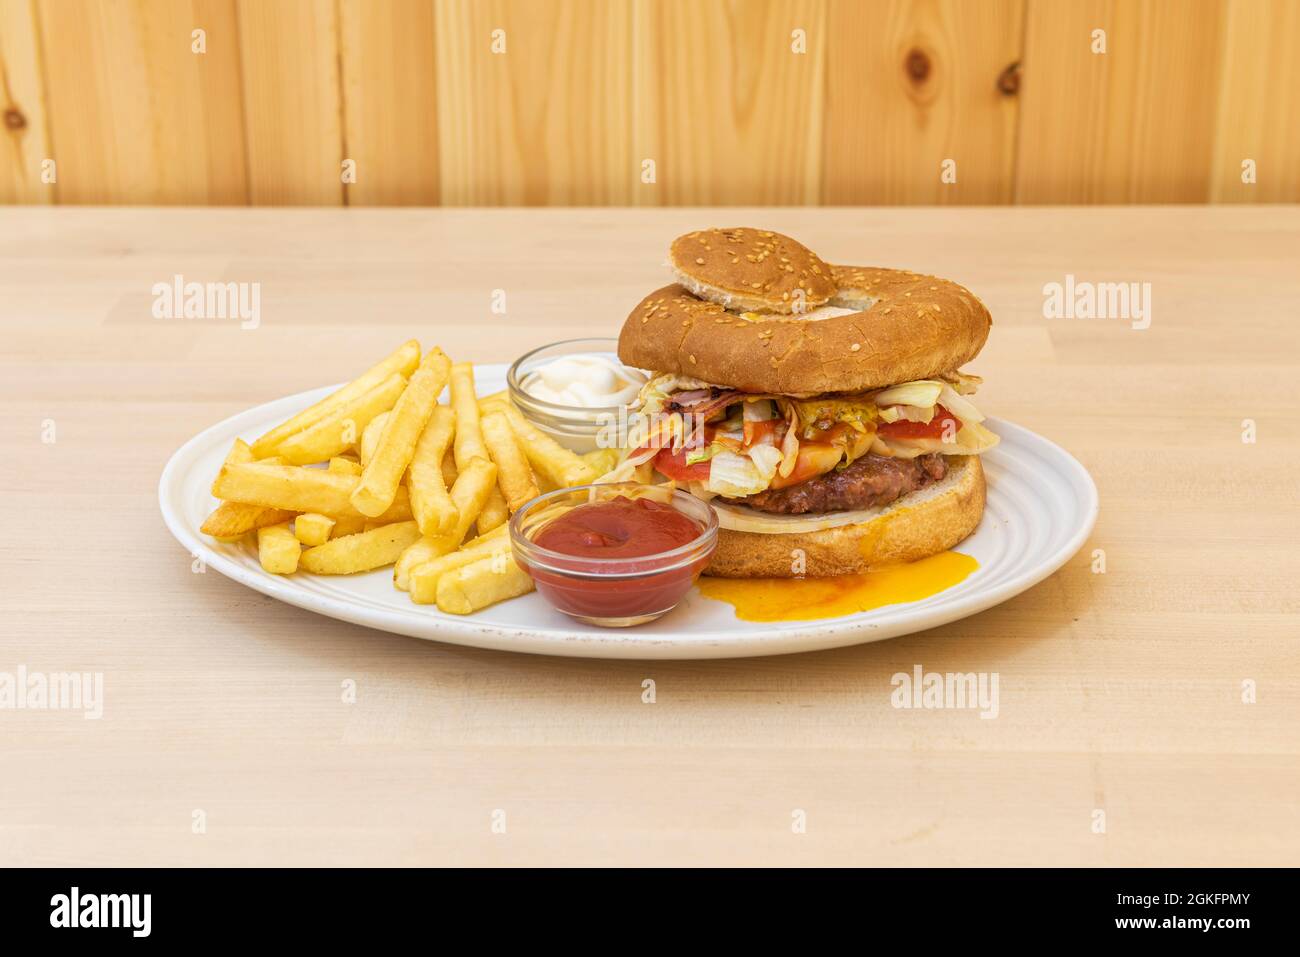 Spezieller Hamburger mit frittiertem Eigelb auf Salat und Fleisch, zwei Kugeln mit Mayonnaise und Ketchup-Sauce und einer Seite Pommes frites Stockfoto